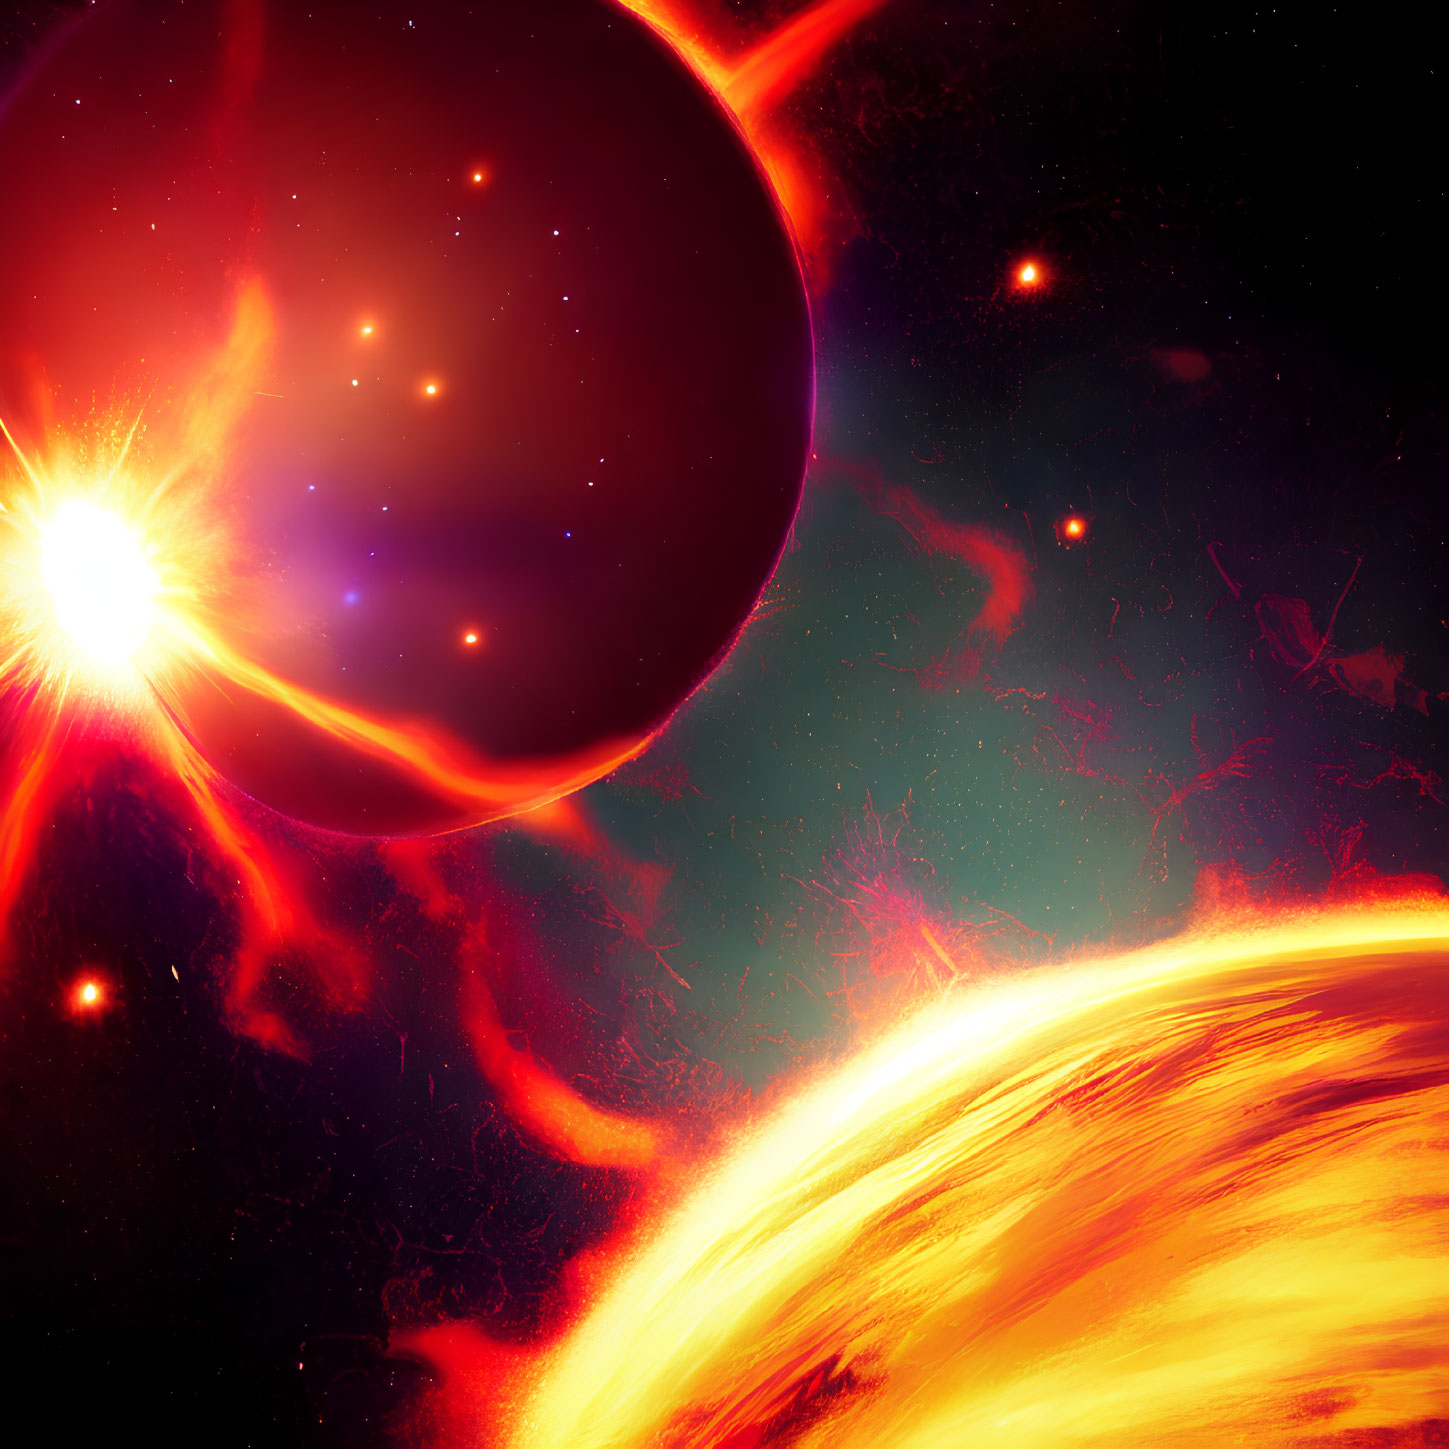 Bright star, exoplanet, moons, solar flares, nebula in cosmic scene